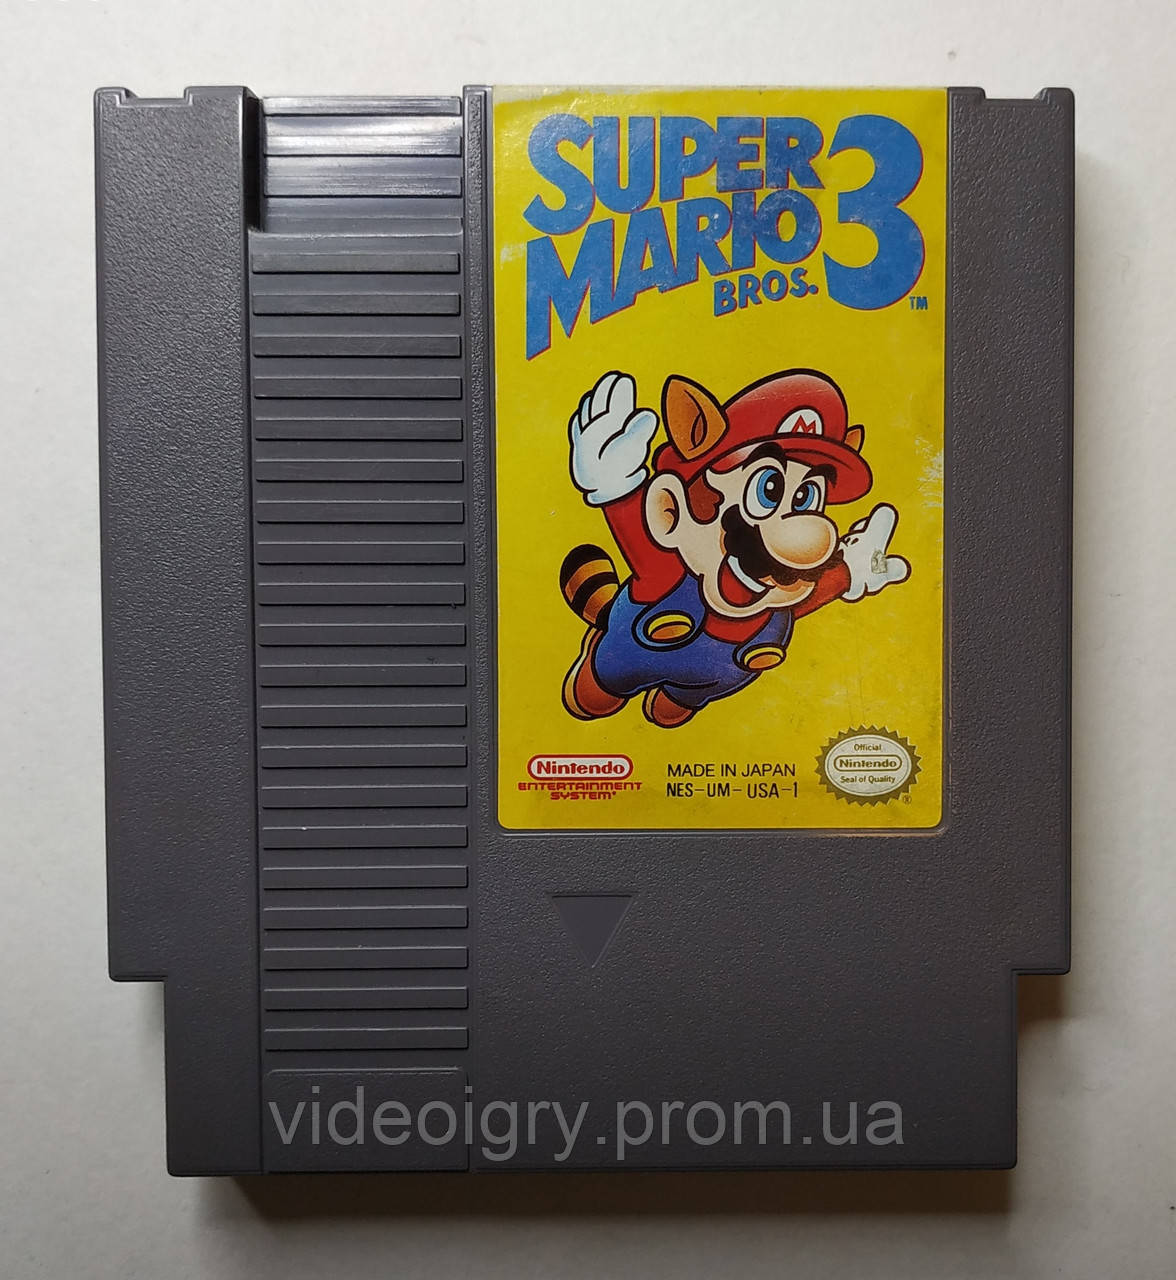 Super Mario Bros. 3 NES-UM-USA-1 БУ